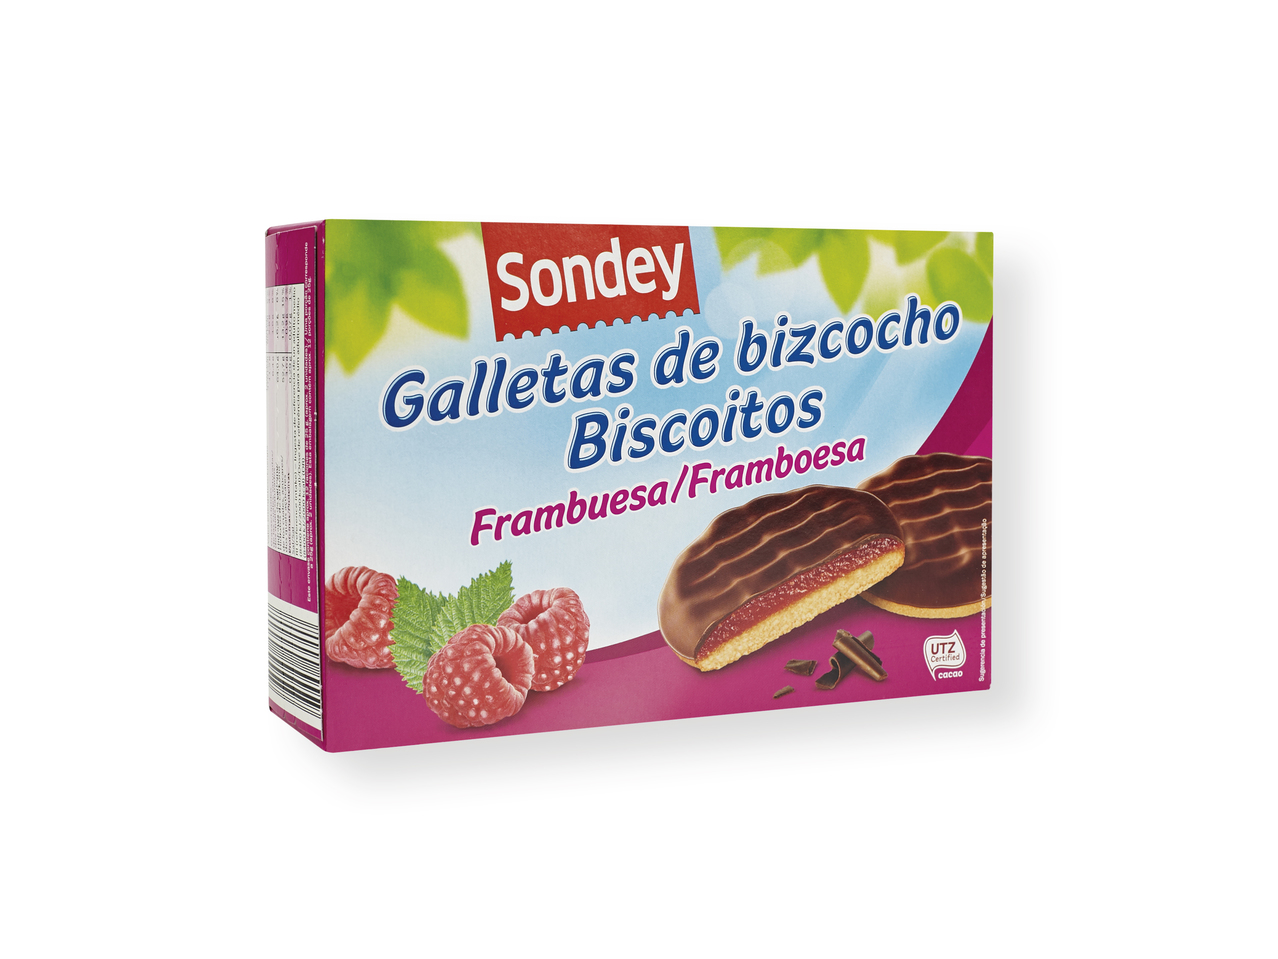 'Sondey(R)' Galletas de bizcocho